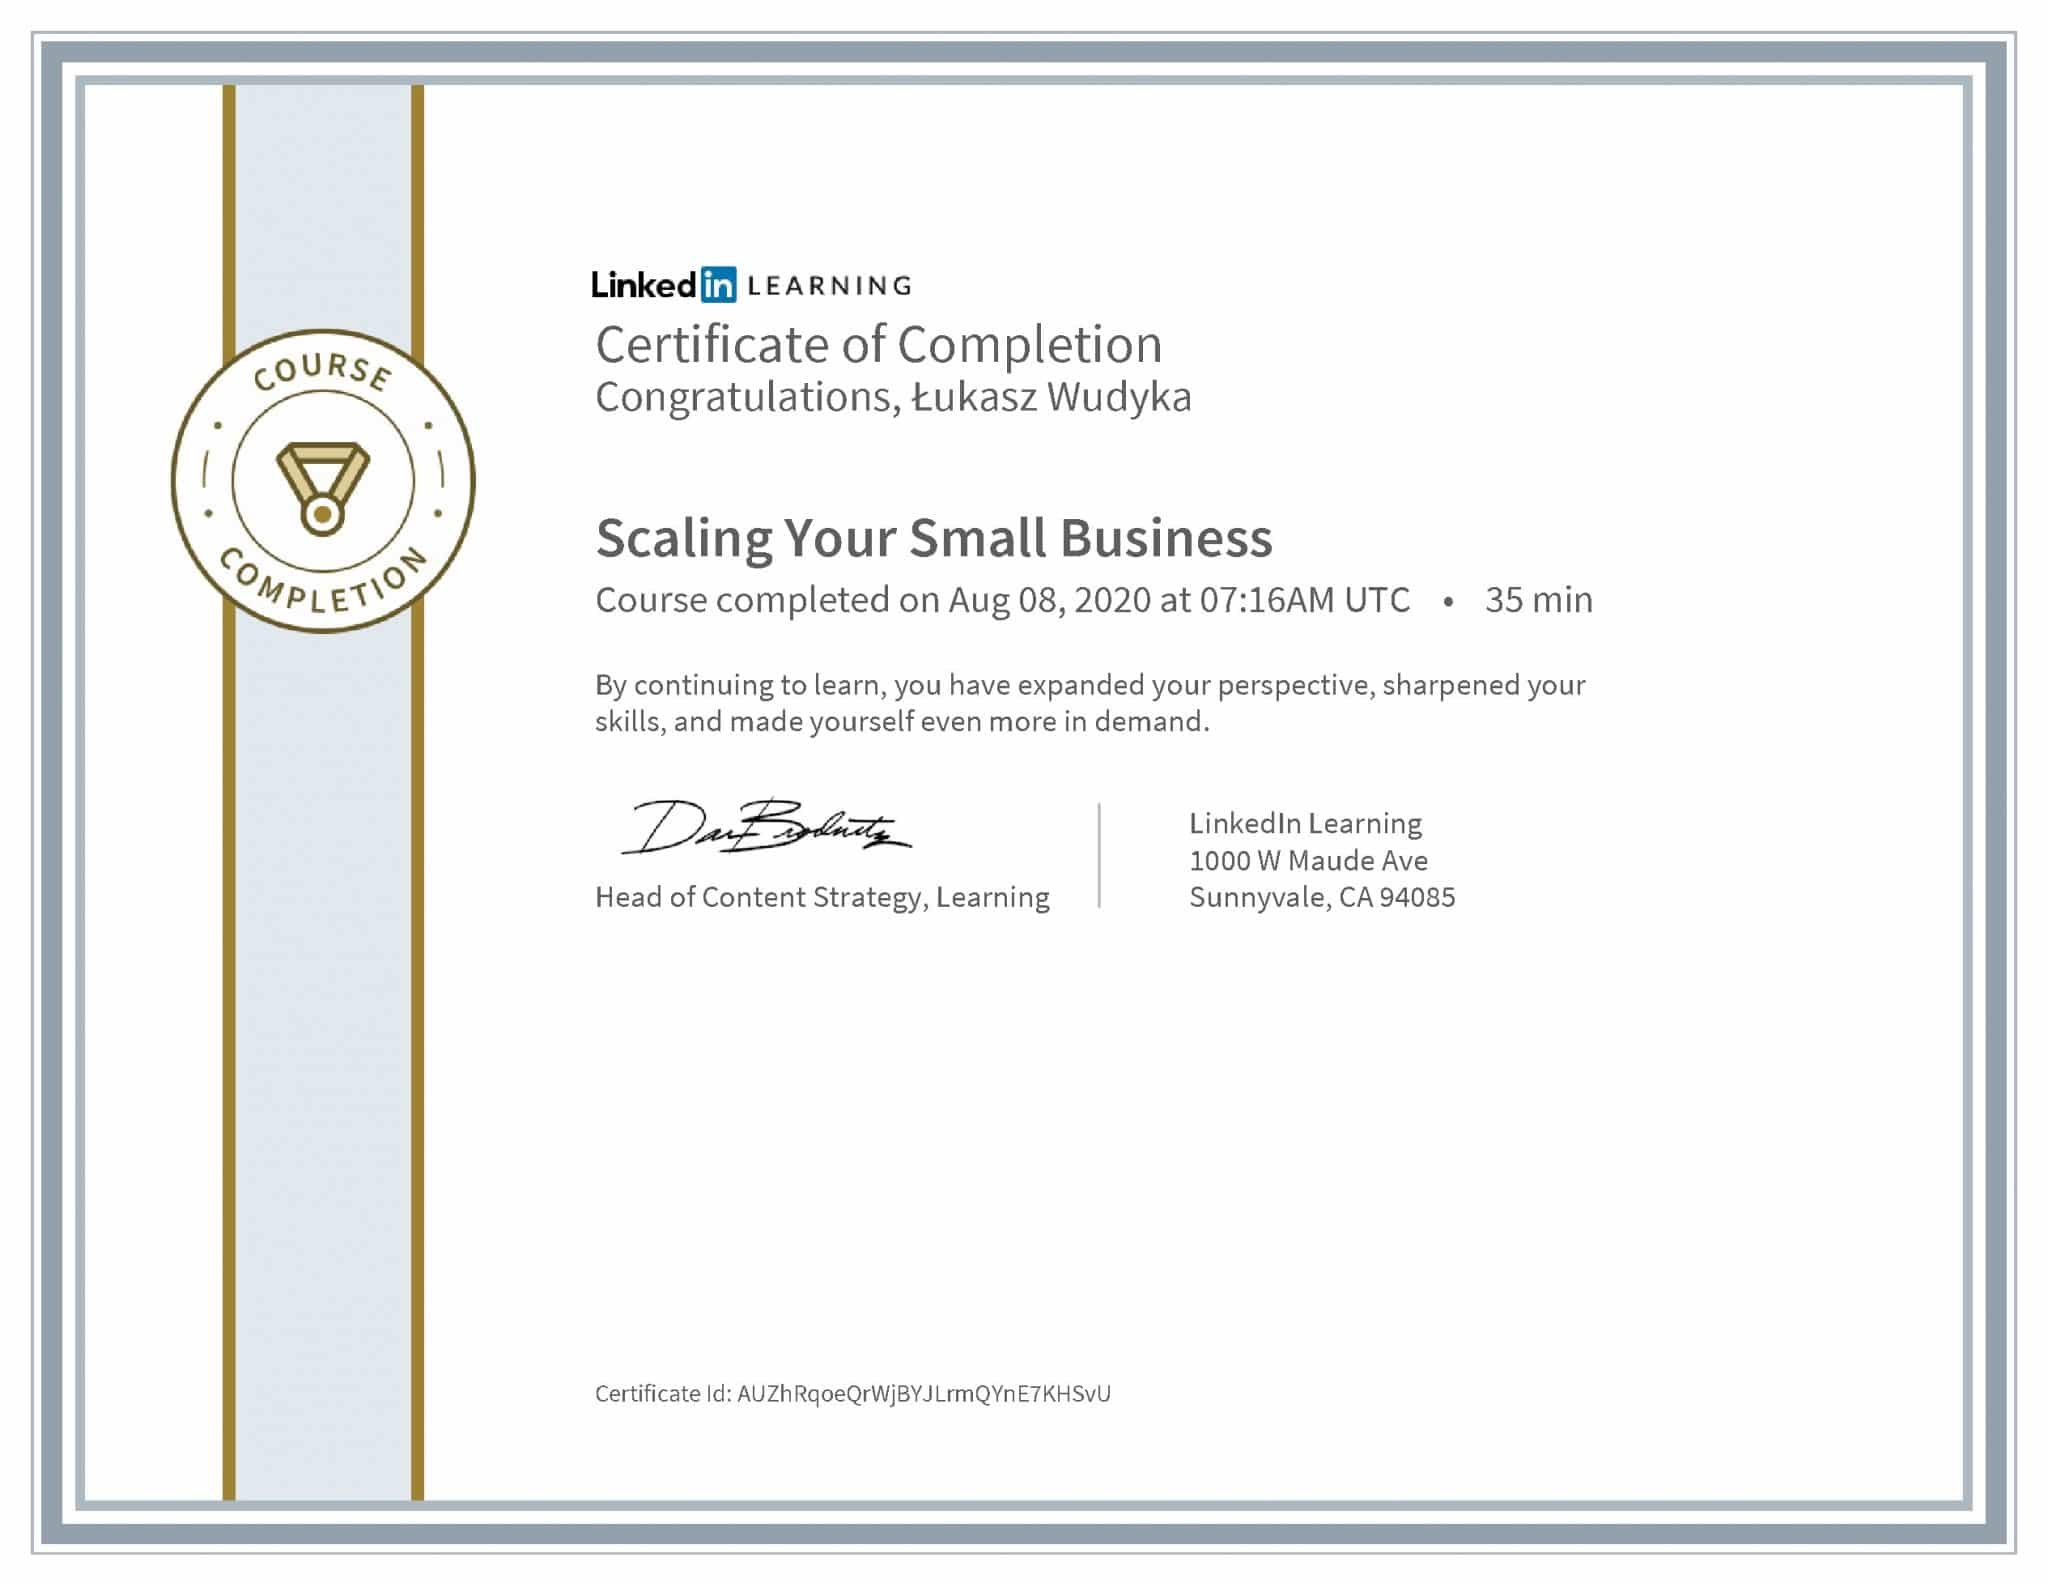 Łukasz Wudyka certyfikat LinkedIn Scaling Your Small Business